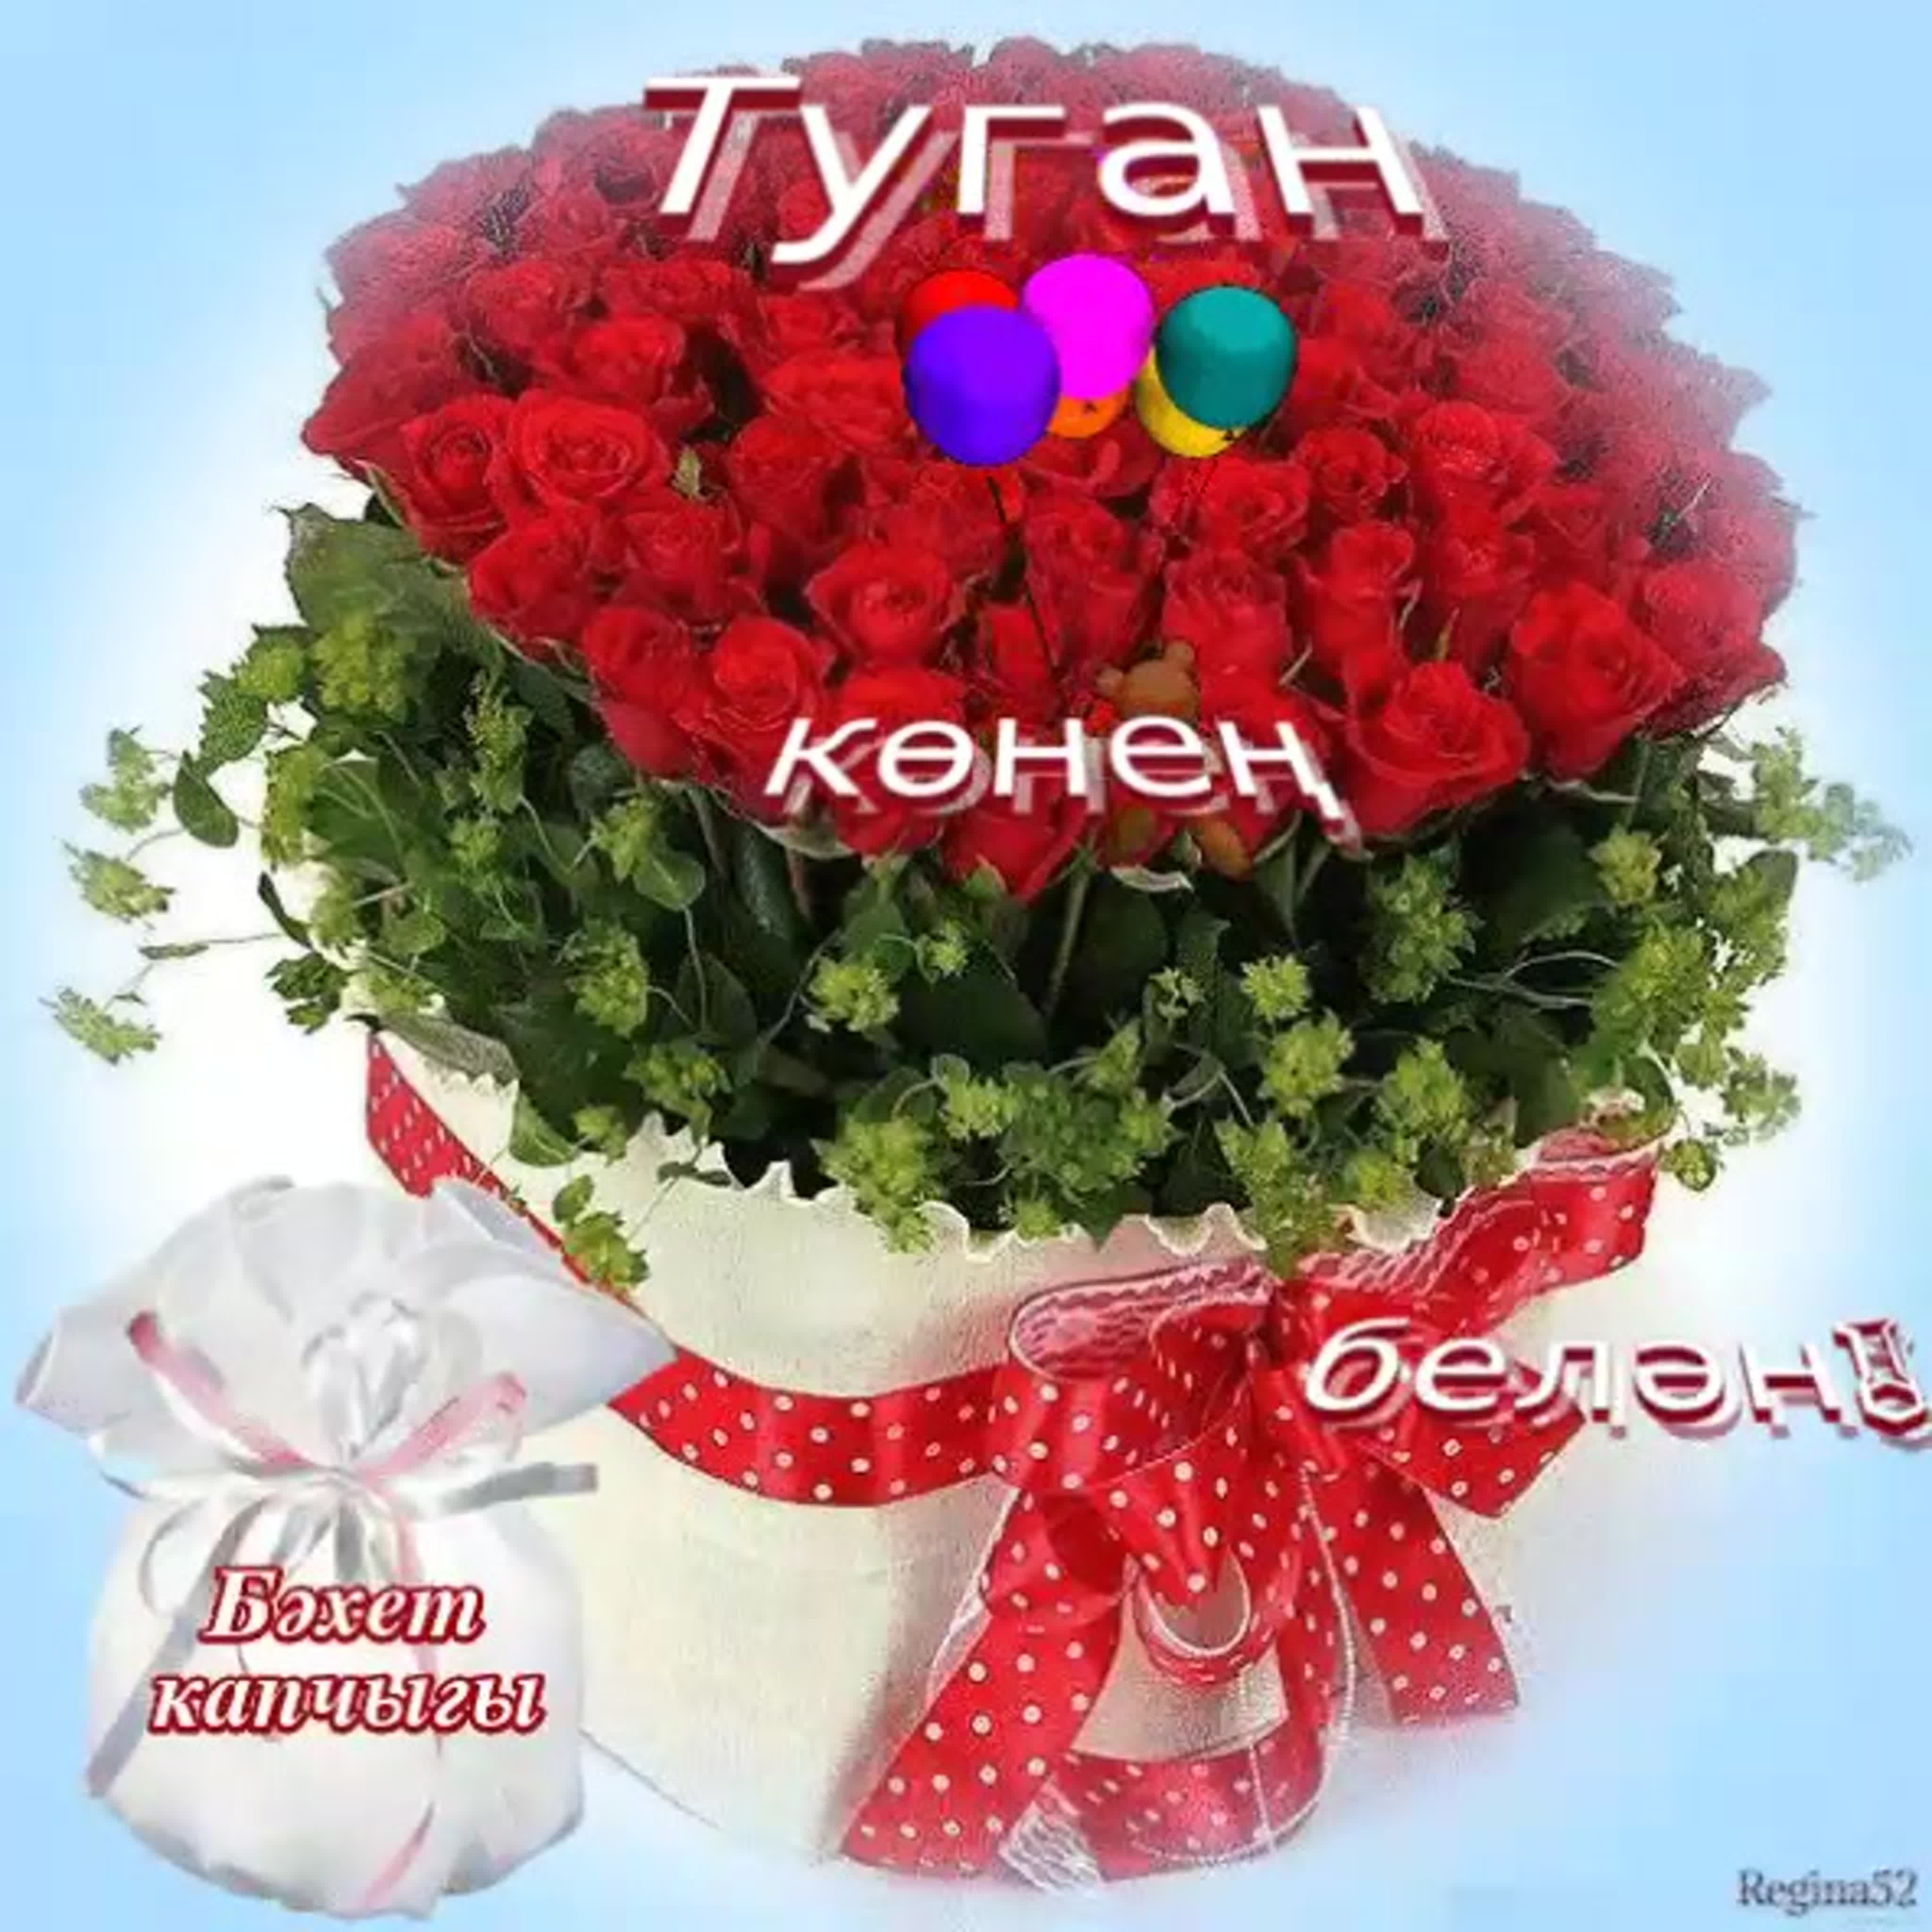 Поздравления с днём с днём рождения на татарском языке